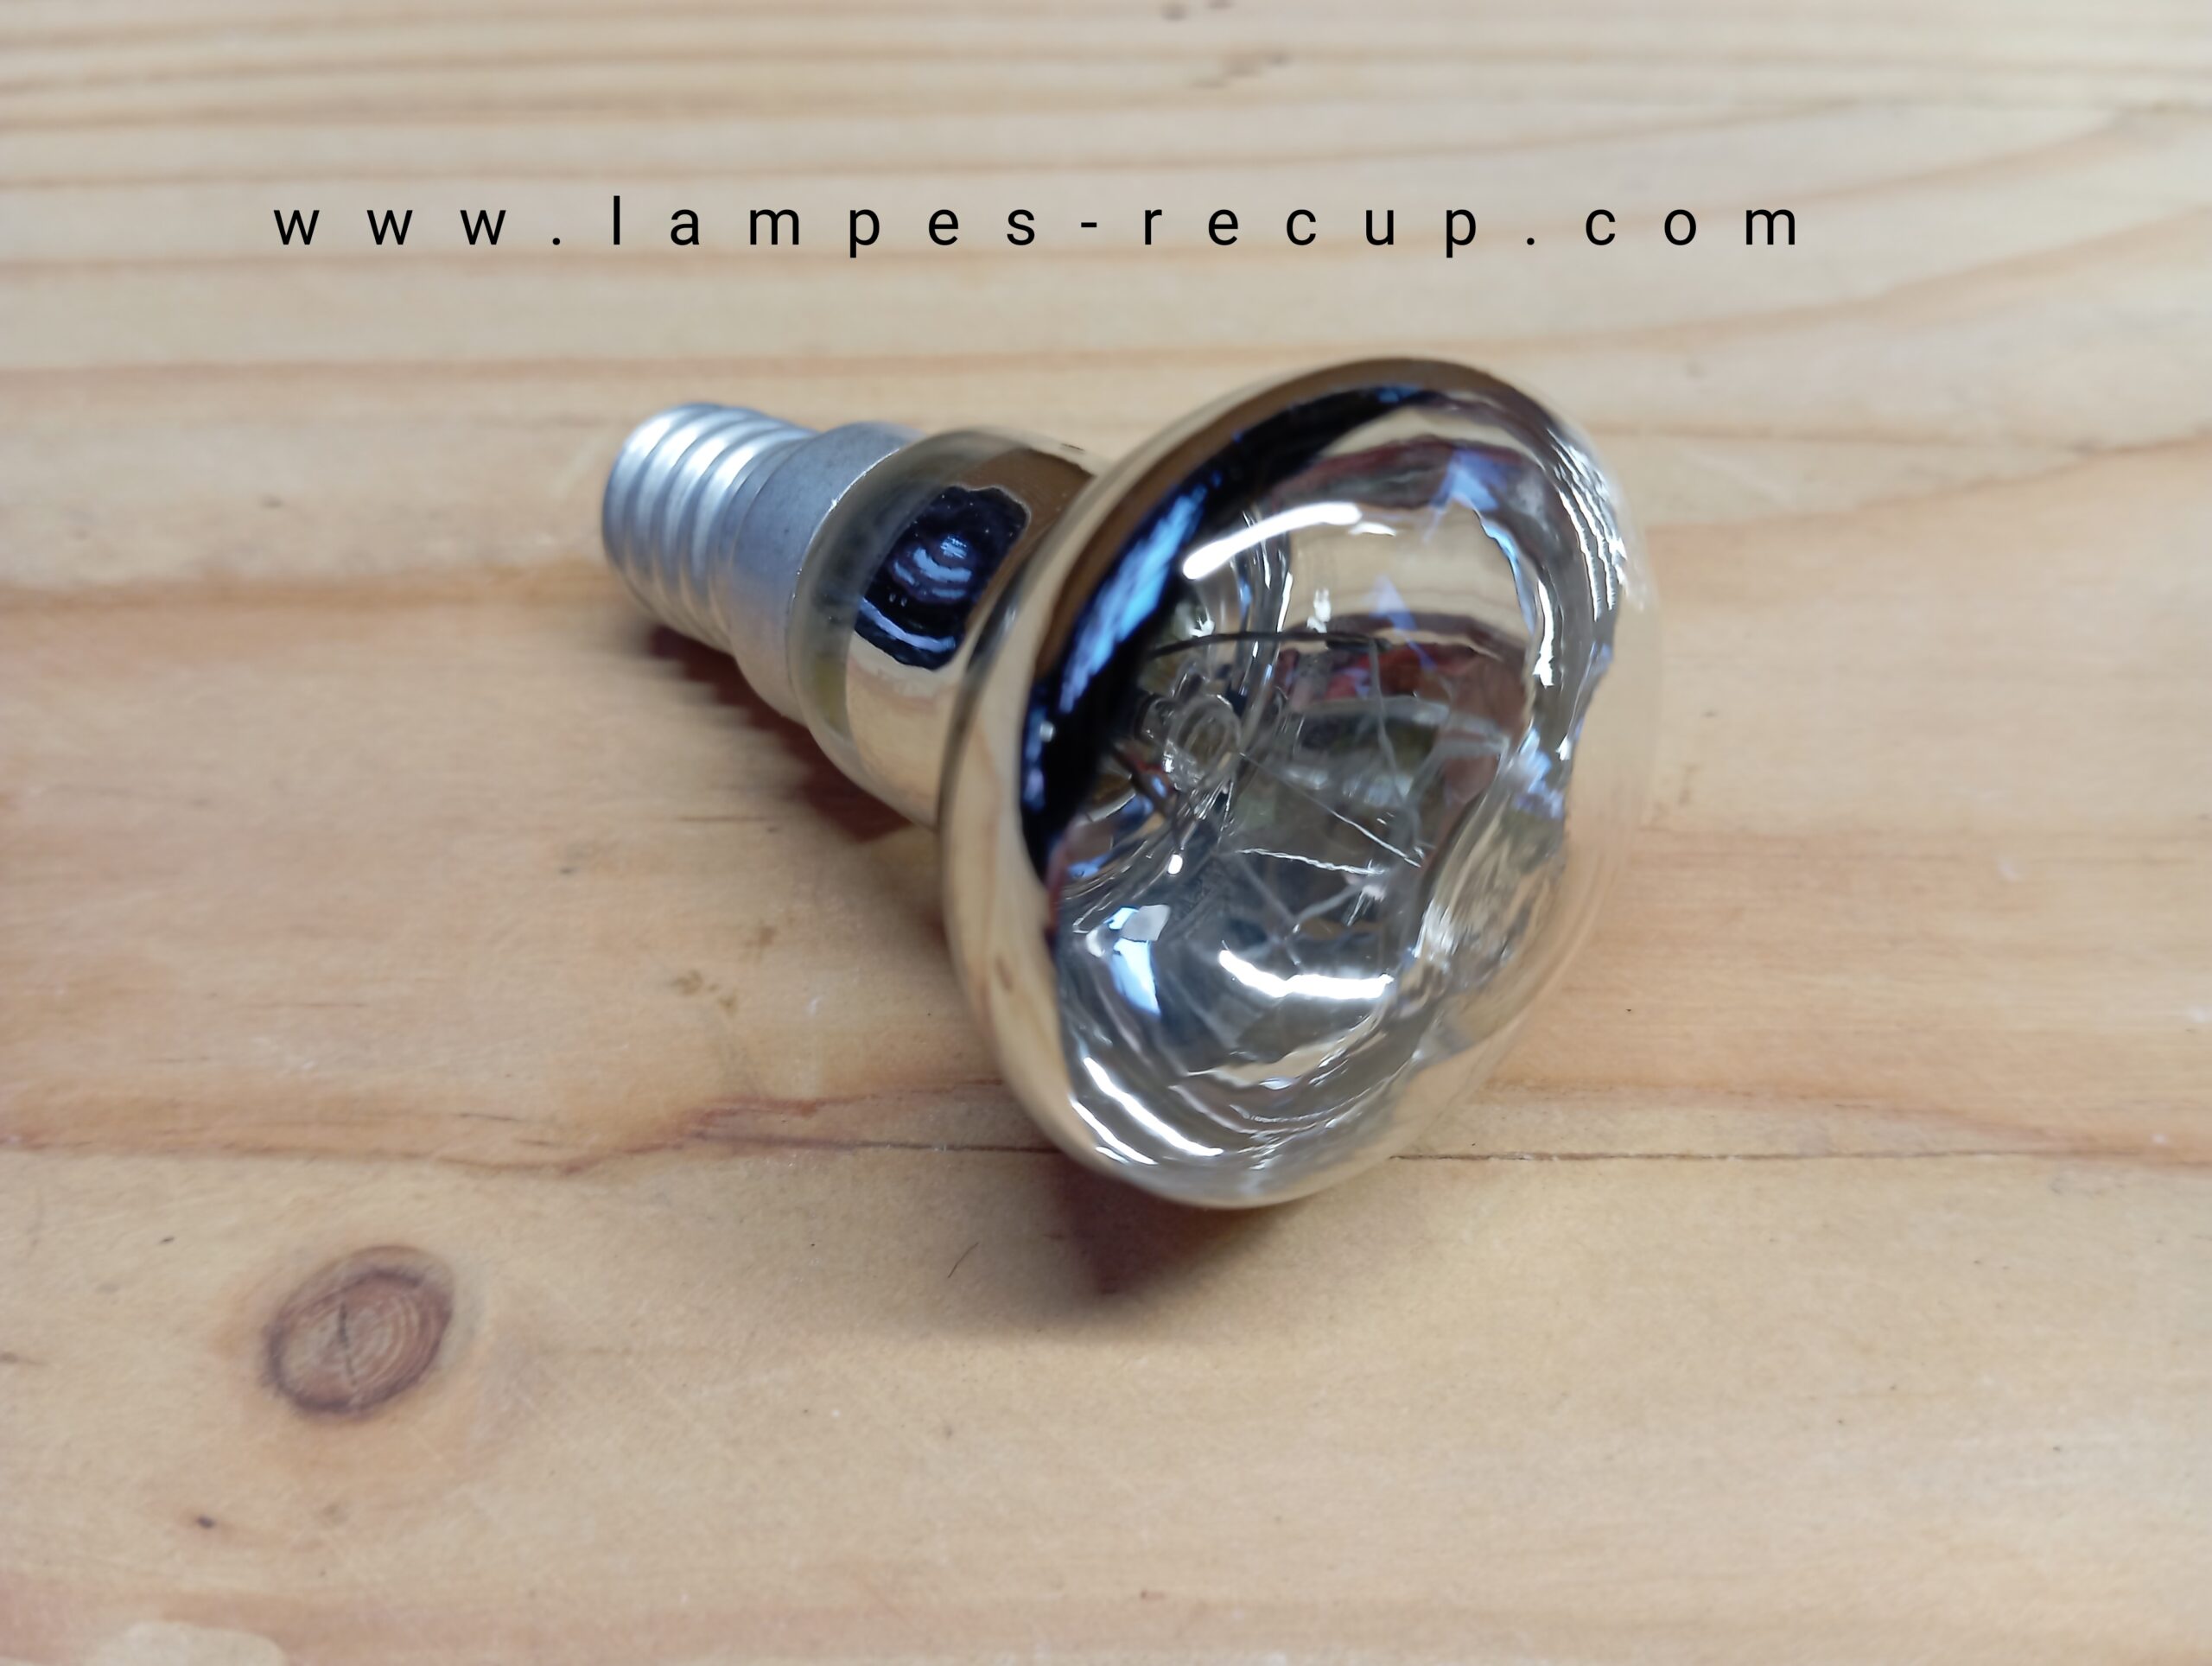 Lampe à lave de rechange E14 R39, 35W, budgétaire à visser, ampoule à  réflecteur transparent, ampoules à spot, ampoules inescentes